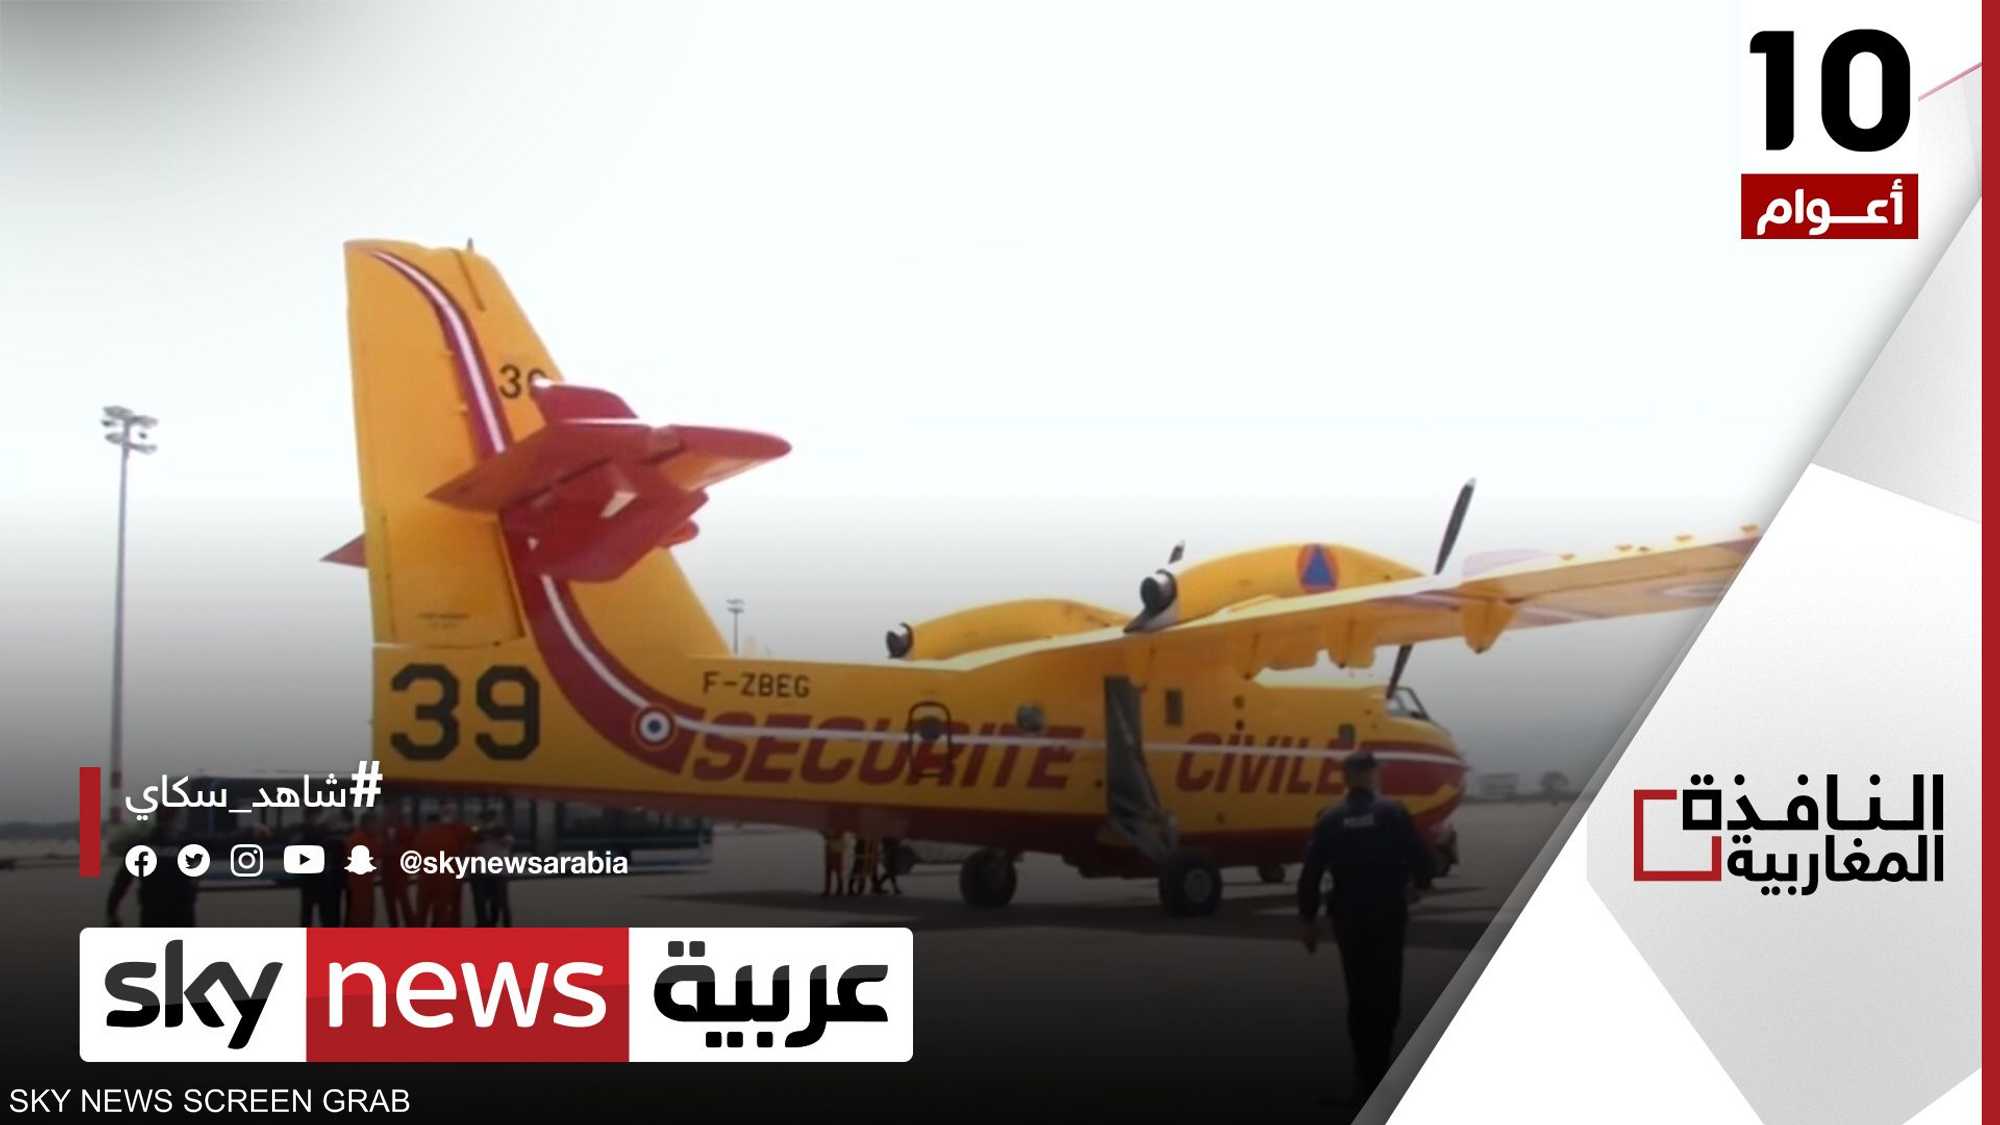 الجزائر تستعد لاستئجار طائرات إطفاء